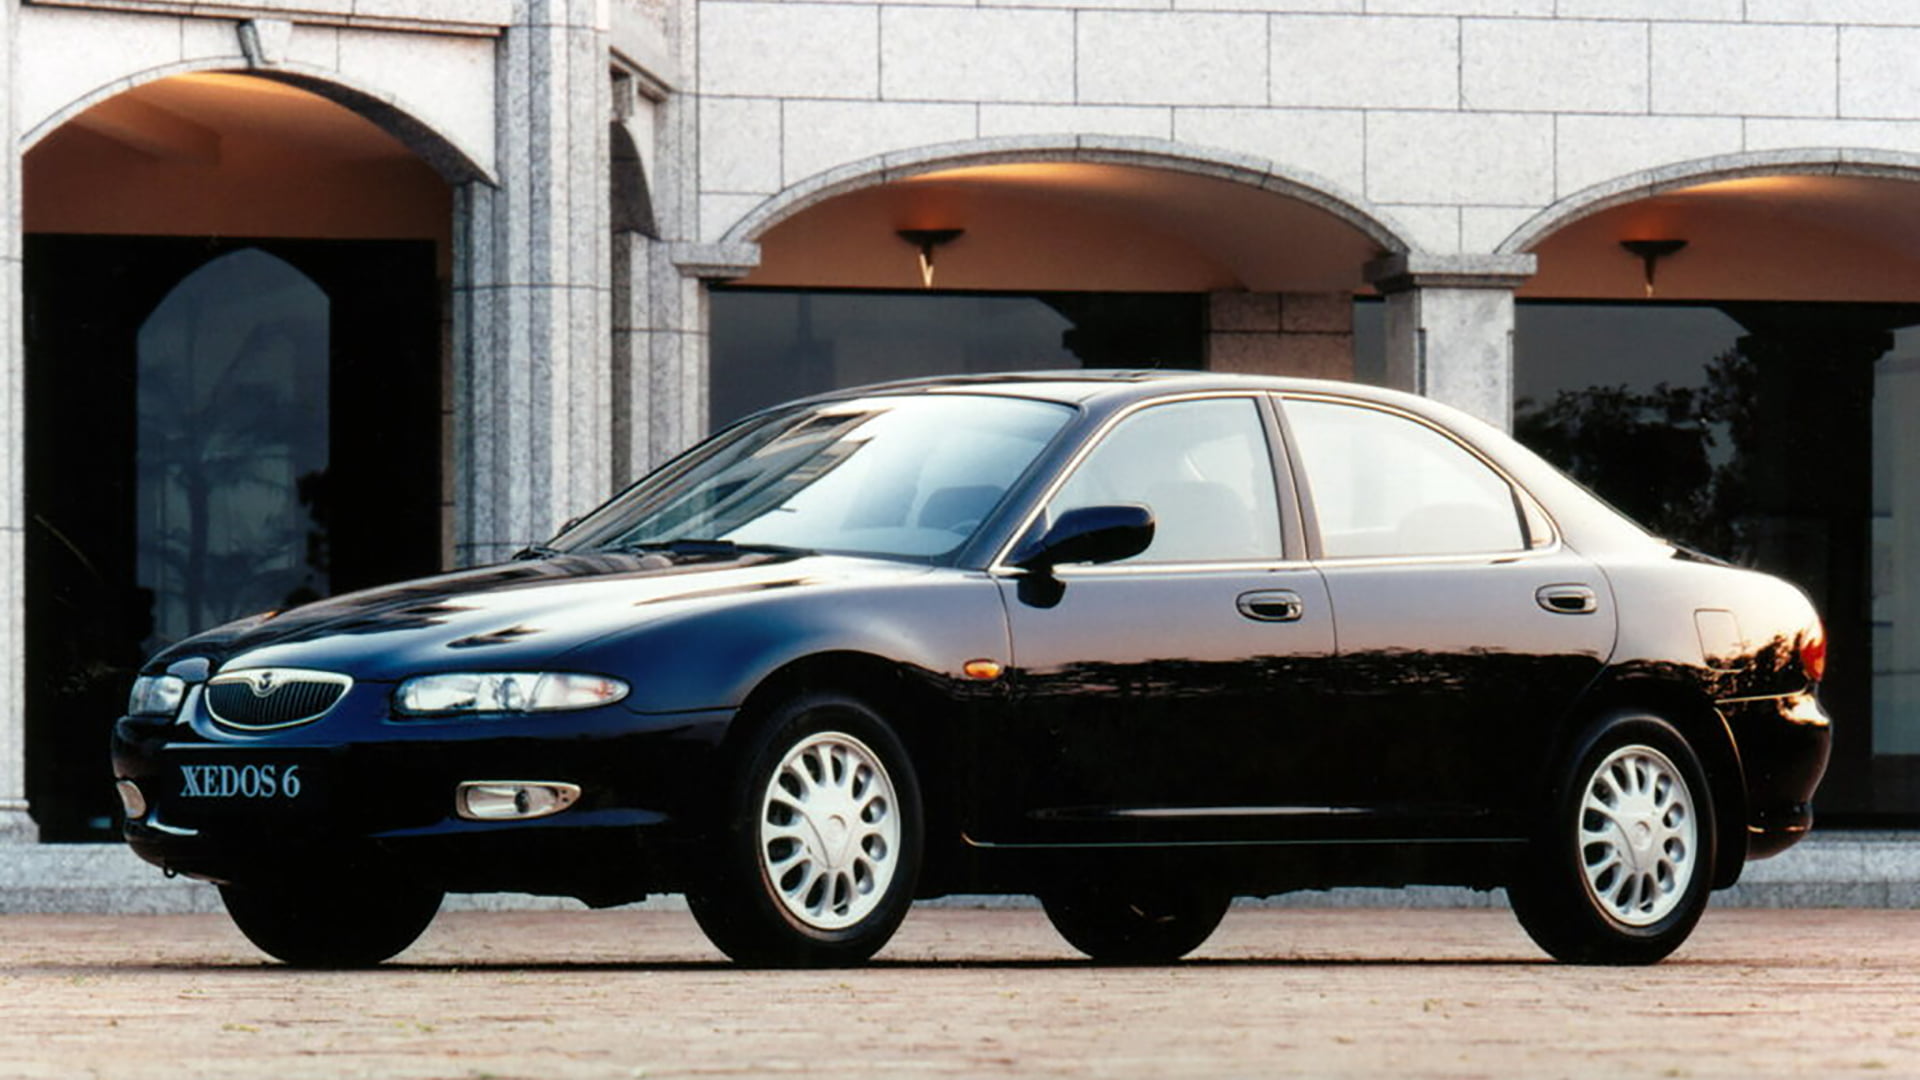 Mazda Xedos 6 exterior promo shot